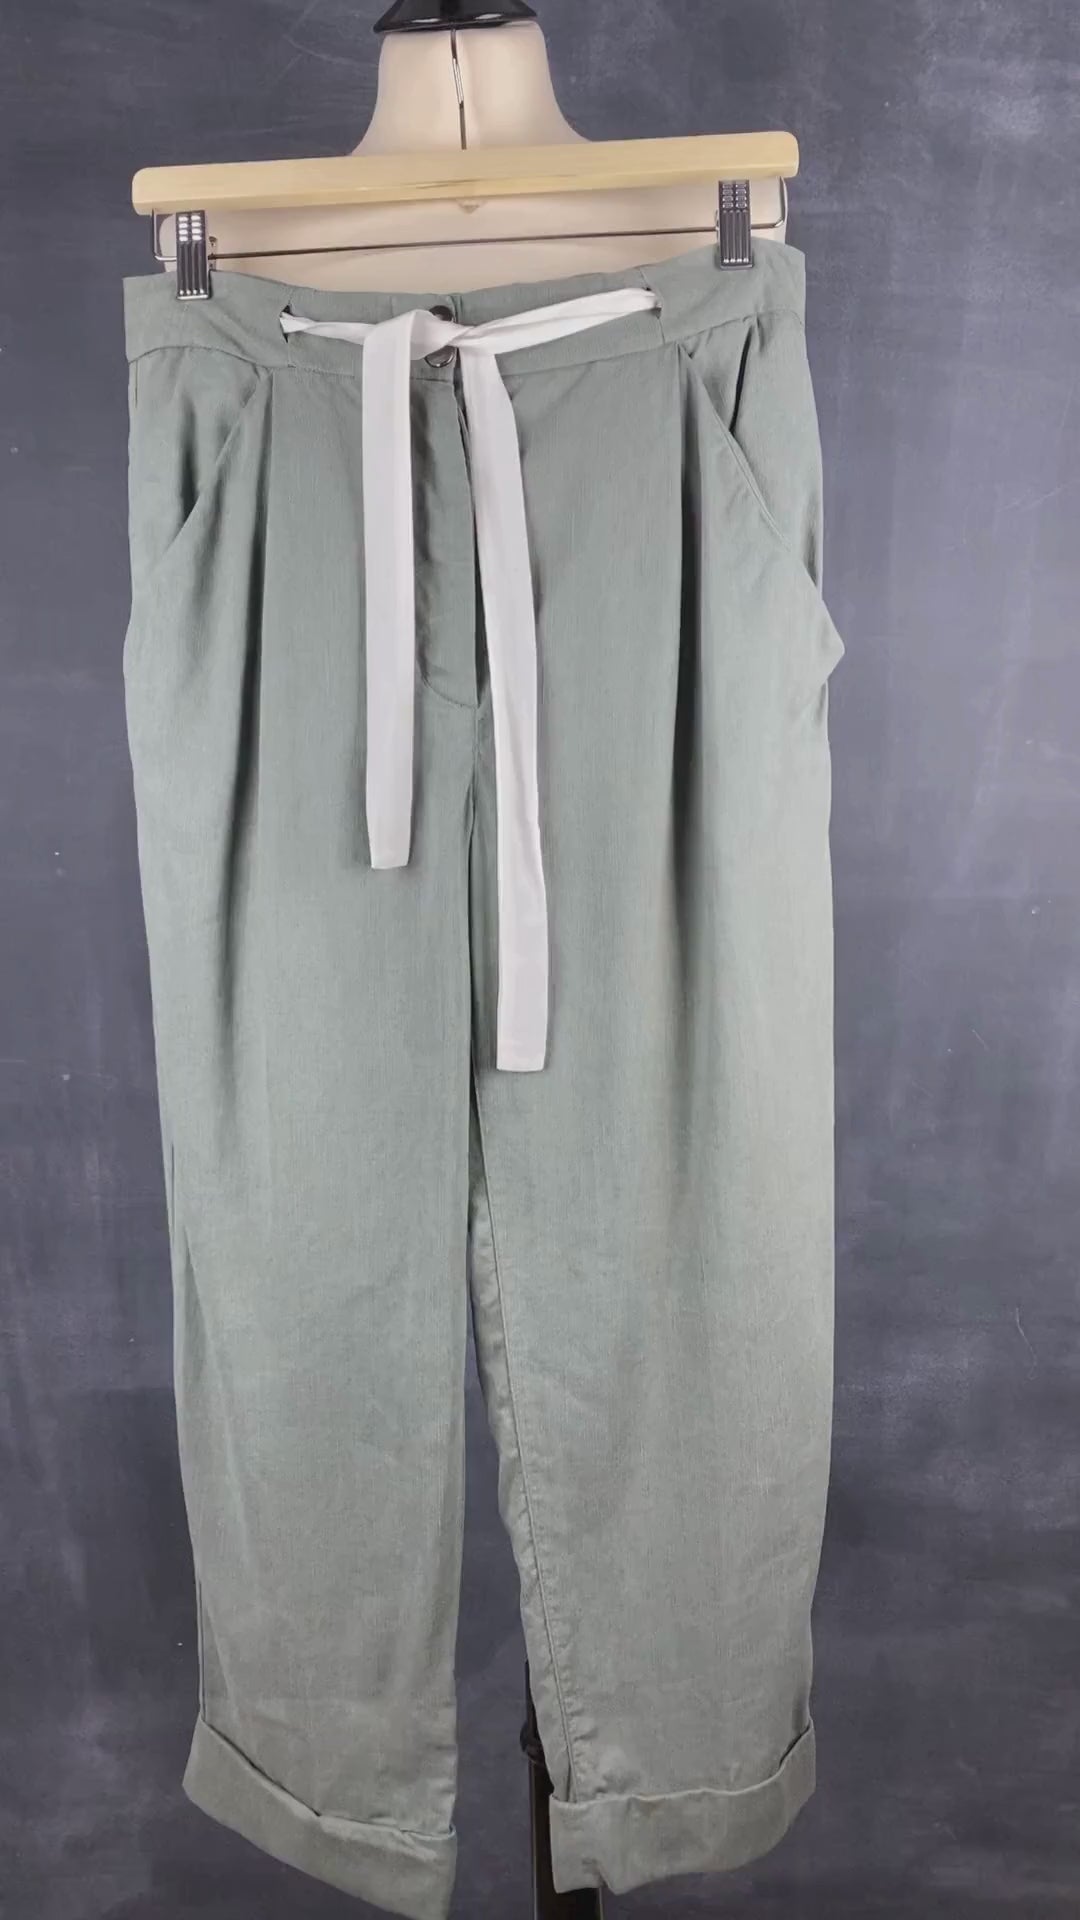 Pantalon vert en lyocell et lin Wilfred, taille 8. Vue de la vidéo qui présente tous les détails du pantalon.